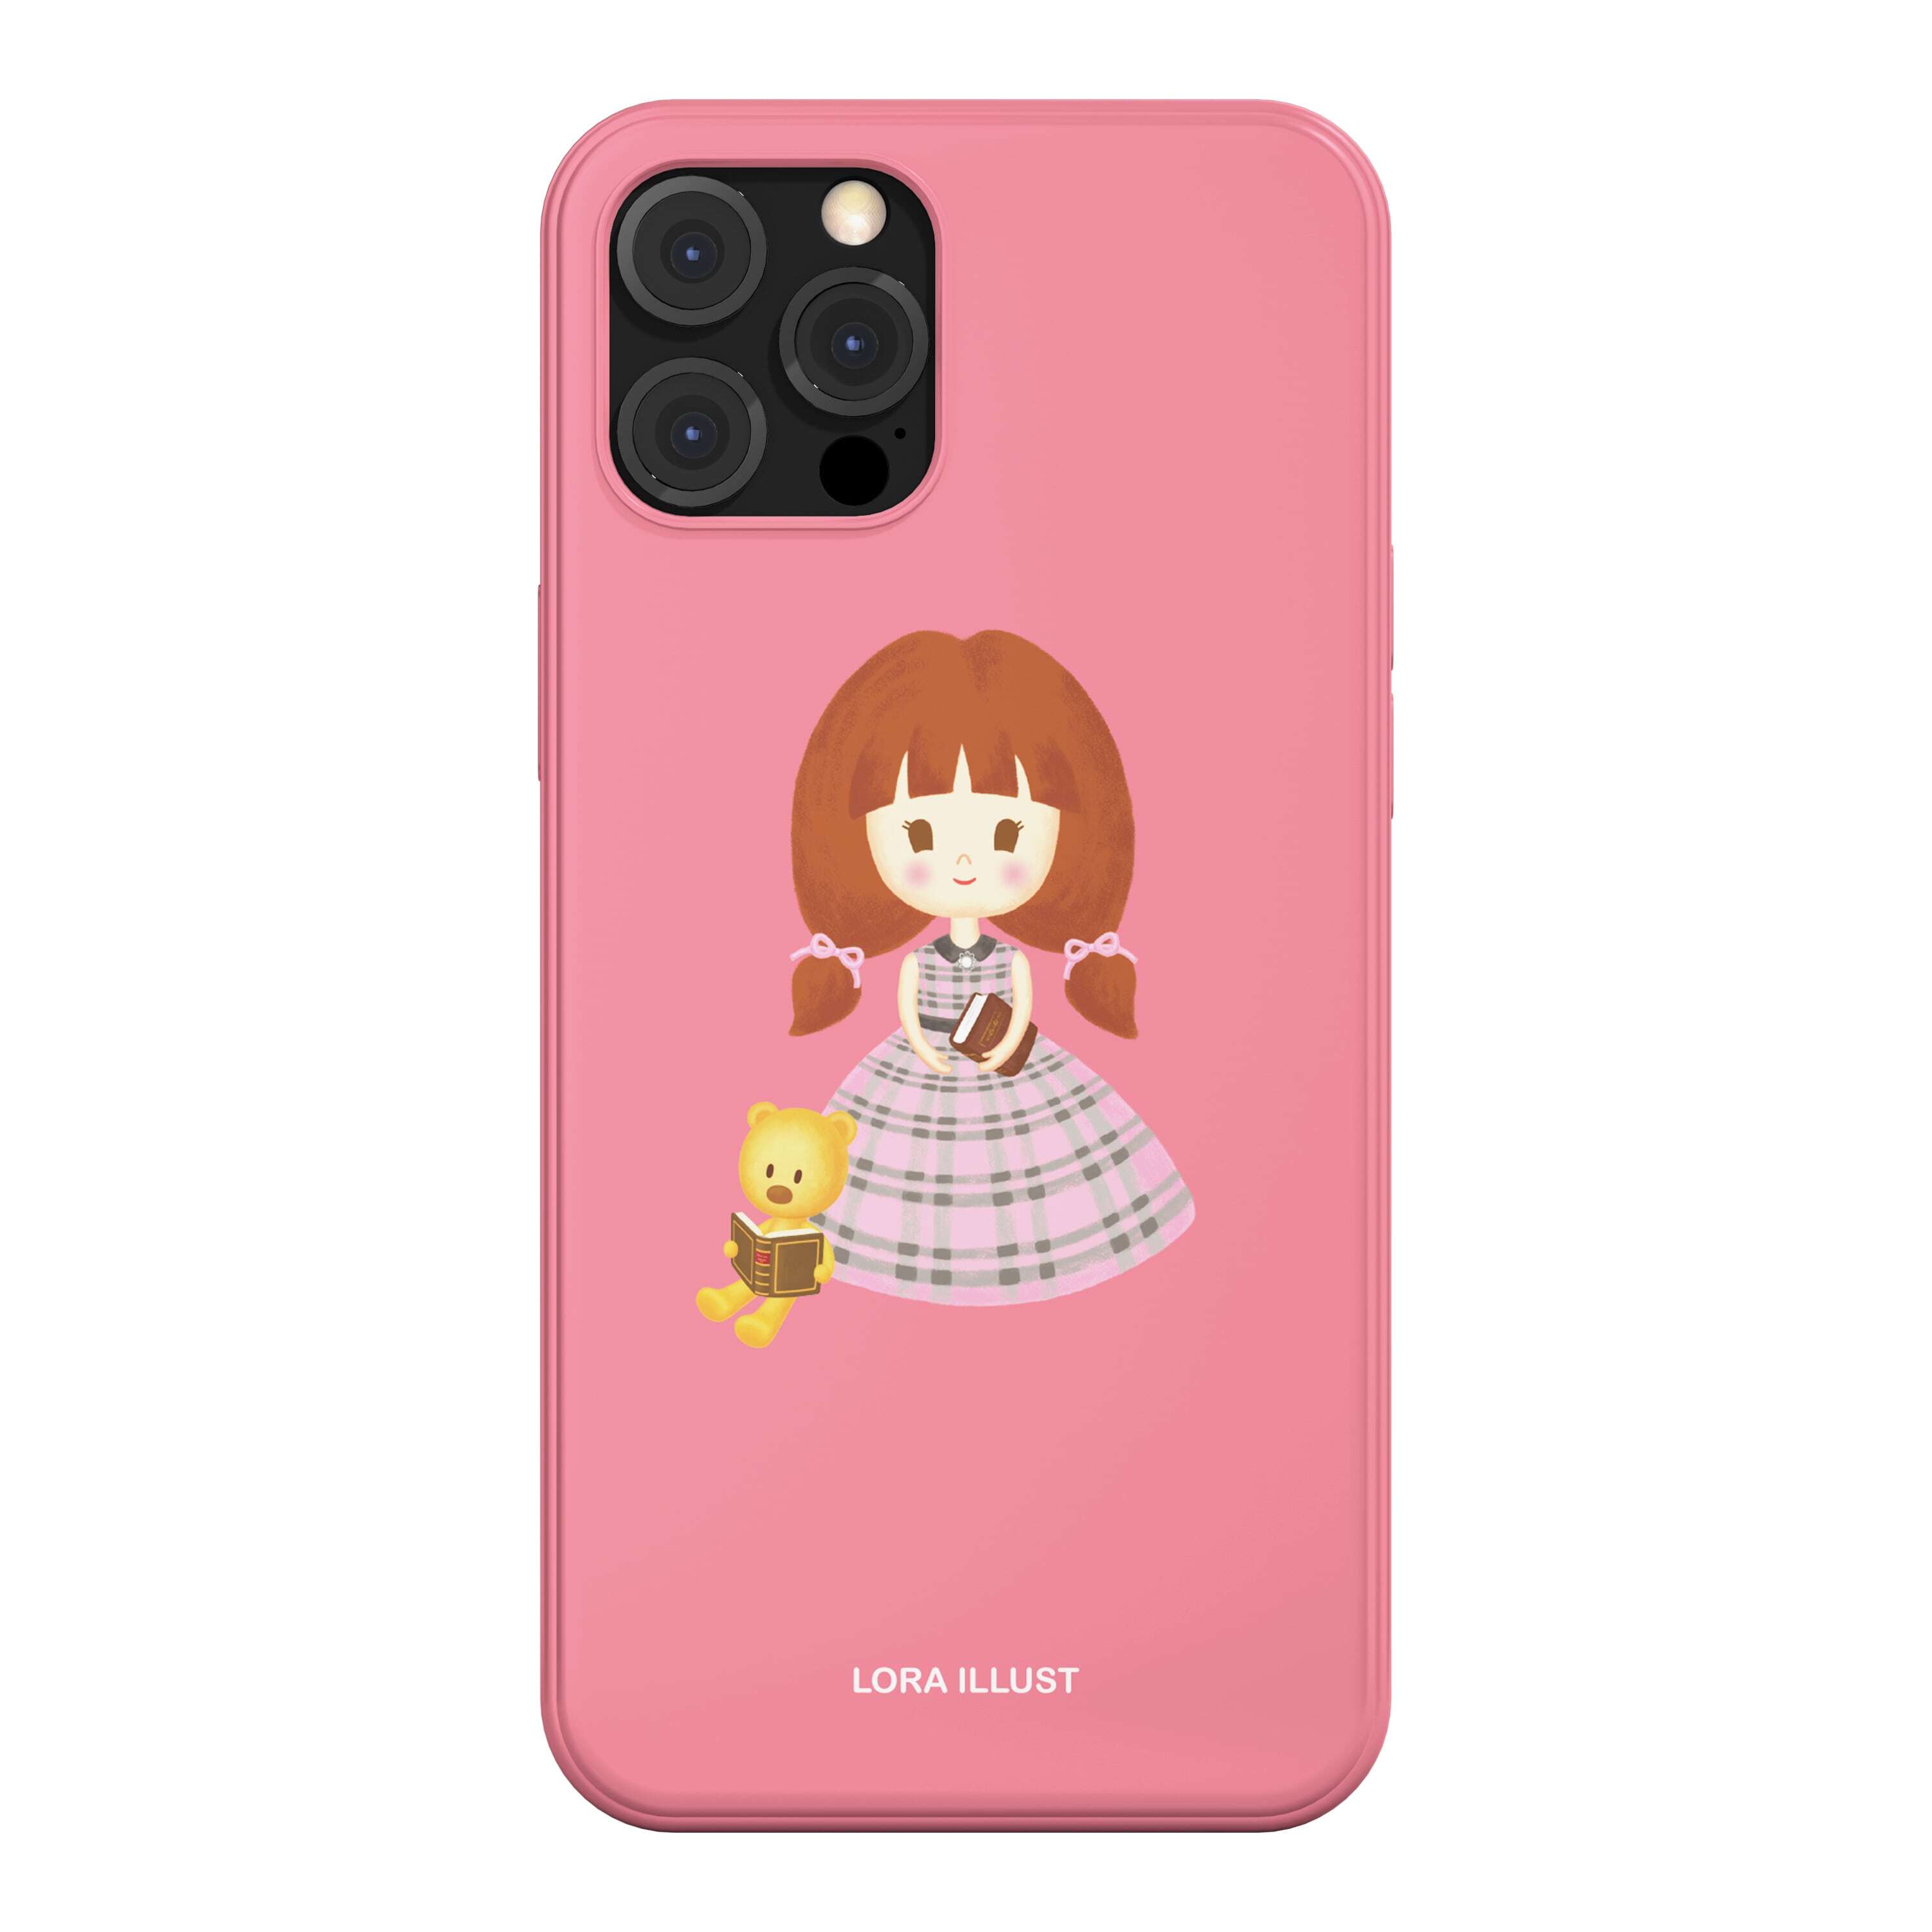 韓国 スマホケース [LORA] 可愛い ほのぼの 乙女 ガーリー イラスト デザイナーズ iPhone Android 携帯カバー 女の子 クマ ピンク (LR01) アイフォン ギャラクシー Galaxy